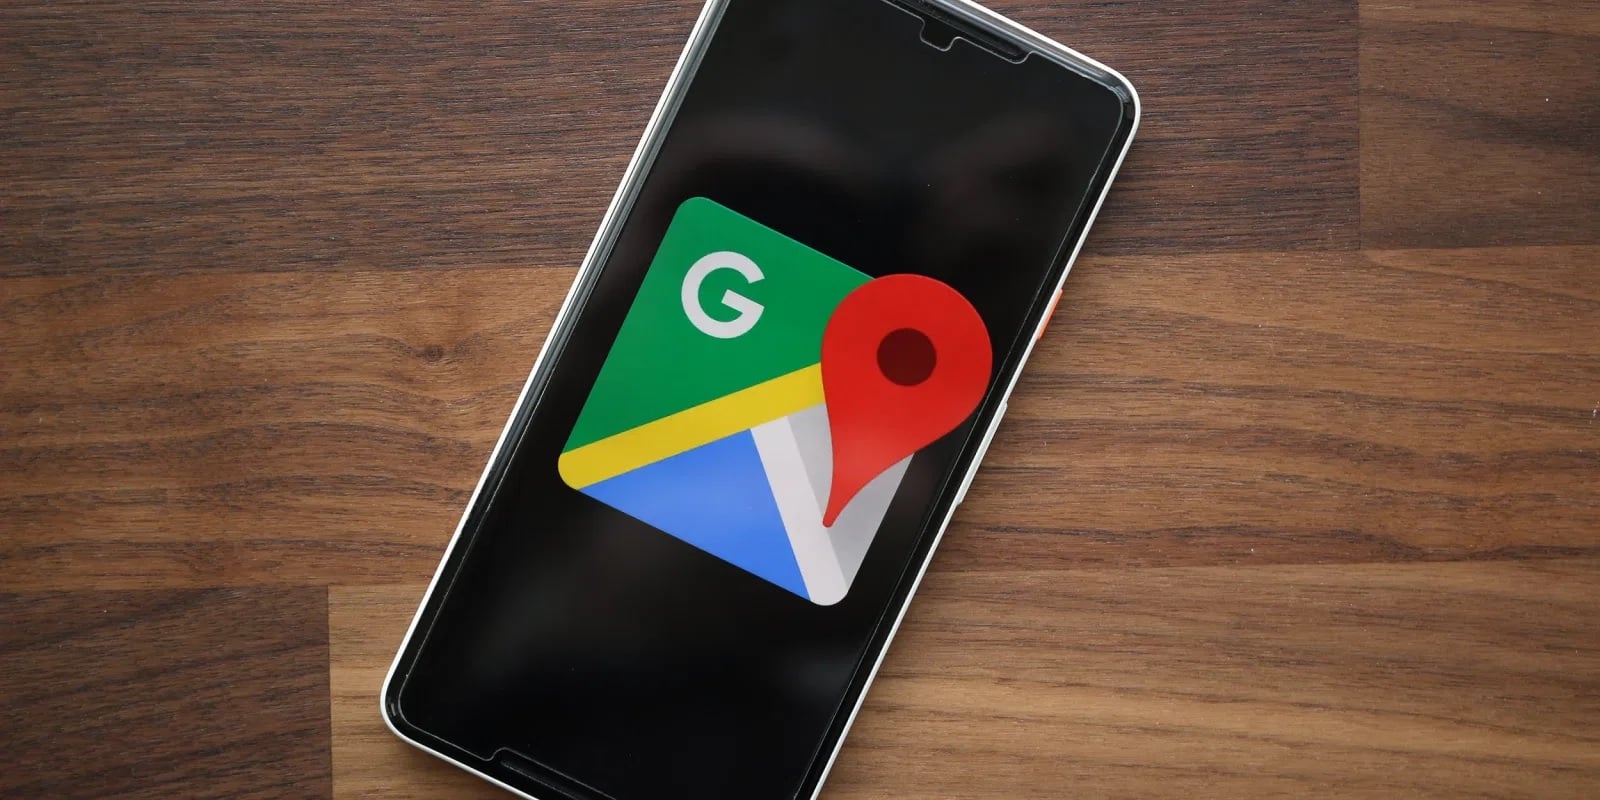 Pastikan aplikasi Google Maps sudah terinstall di ponsel. Jika belum terinstall, install terlebih dahulu dan pastikan sudah menggunakan versi terbaru